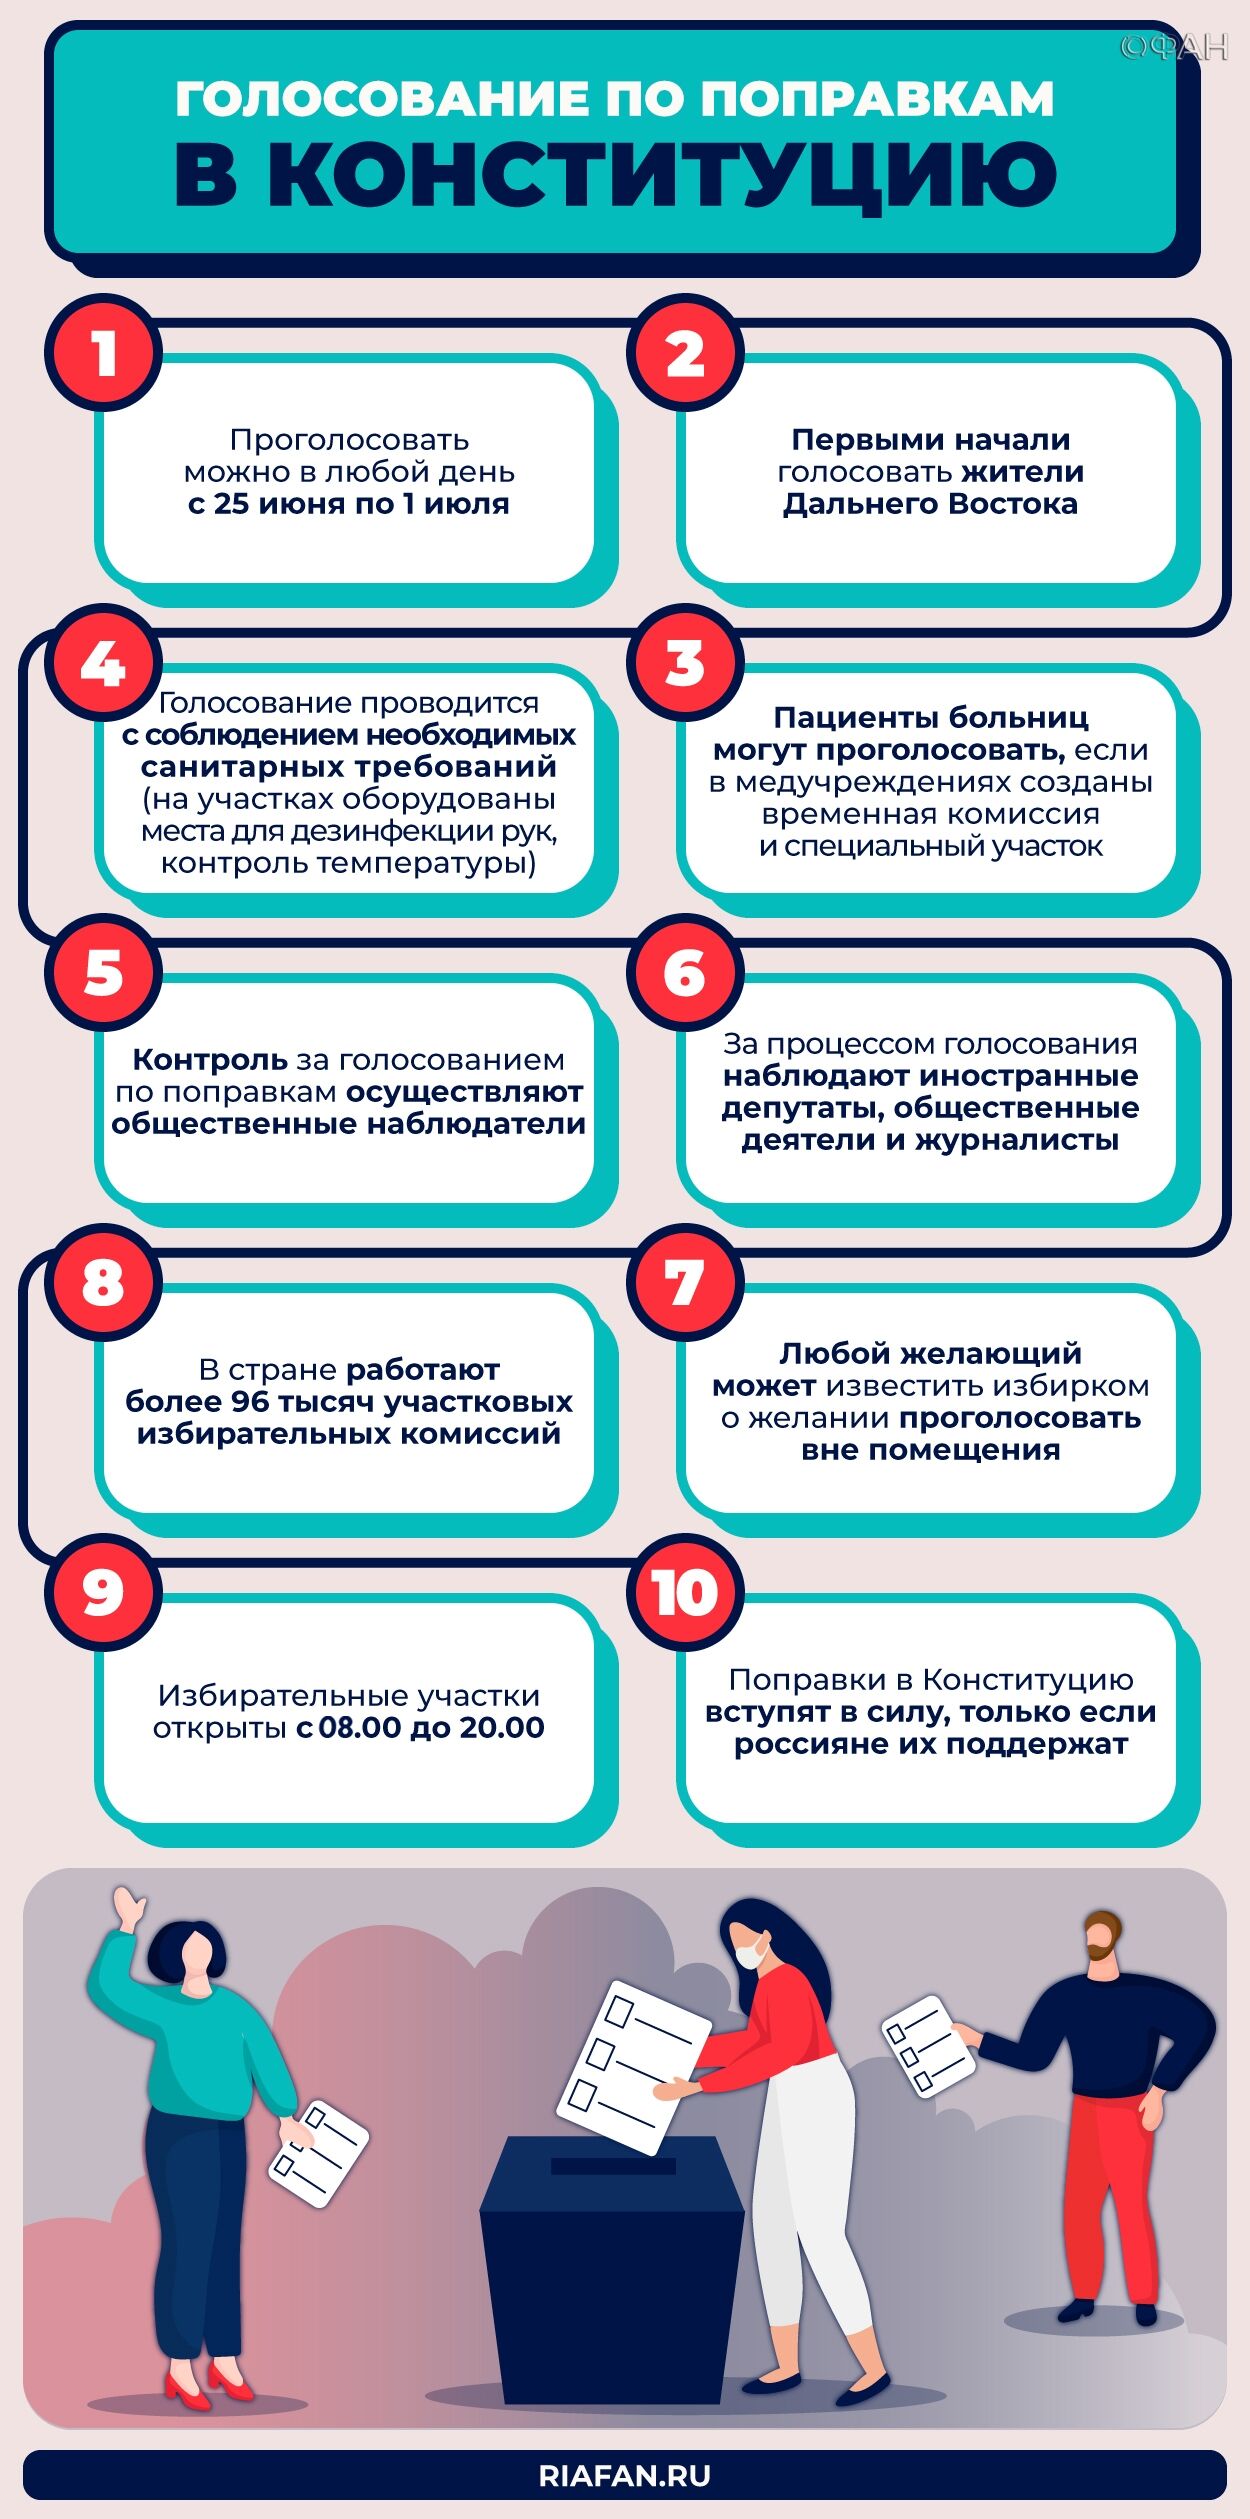 На Южных Курилах установили памятный знак с текстом поправки к Конституции РФ